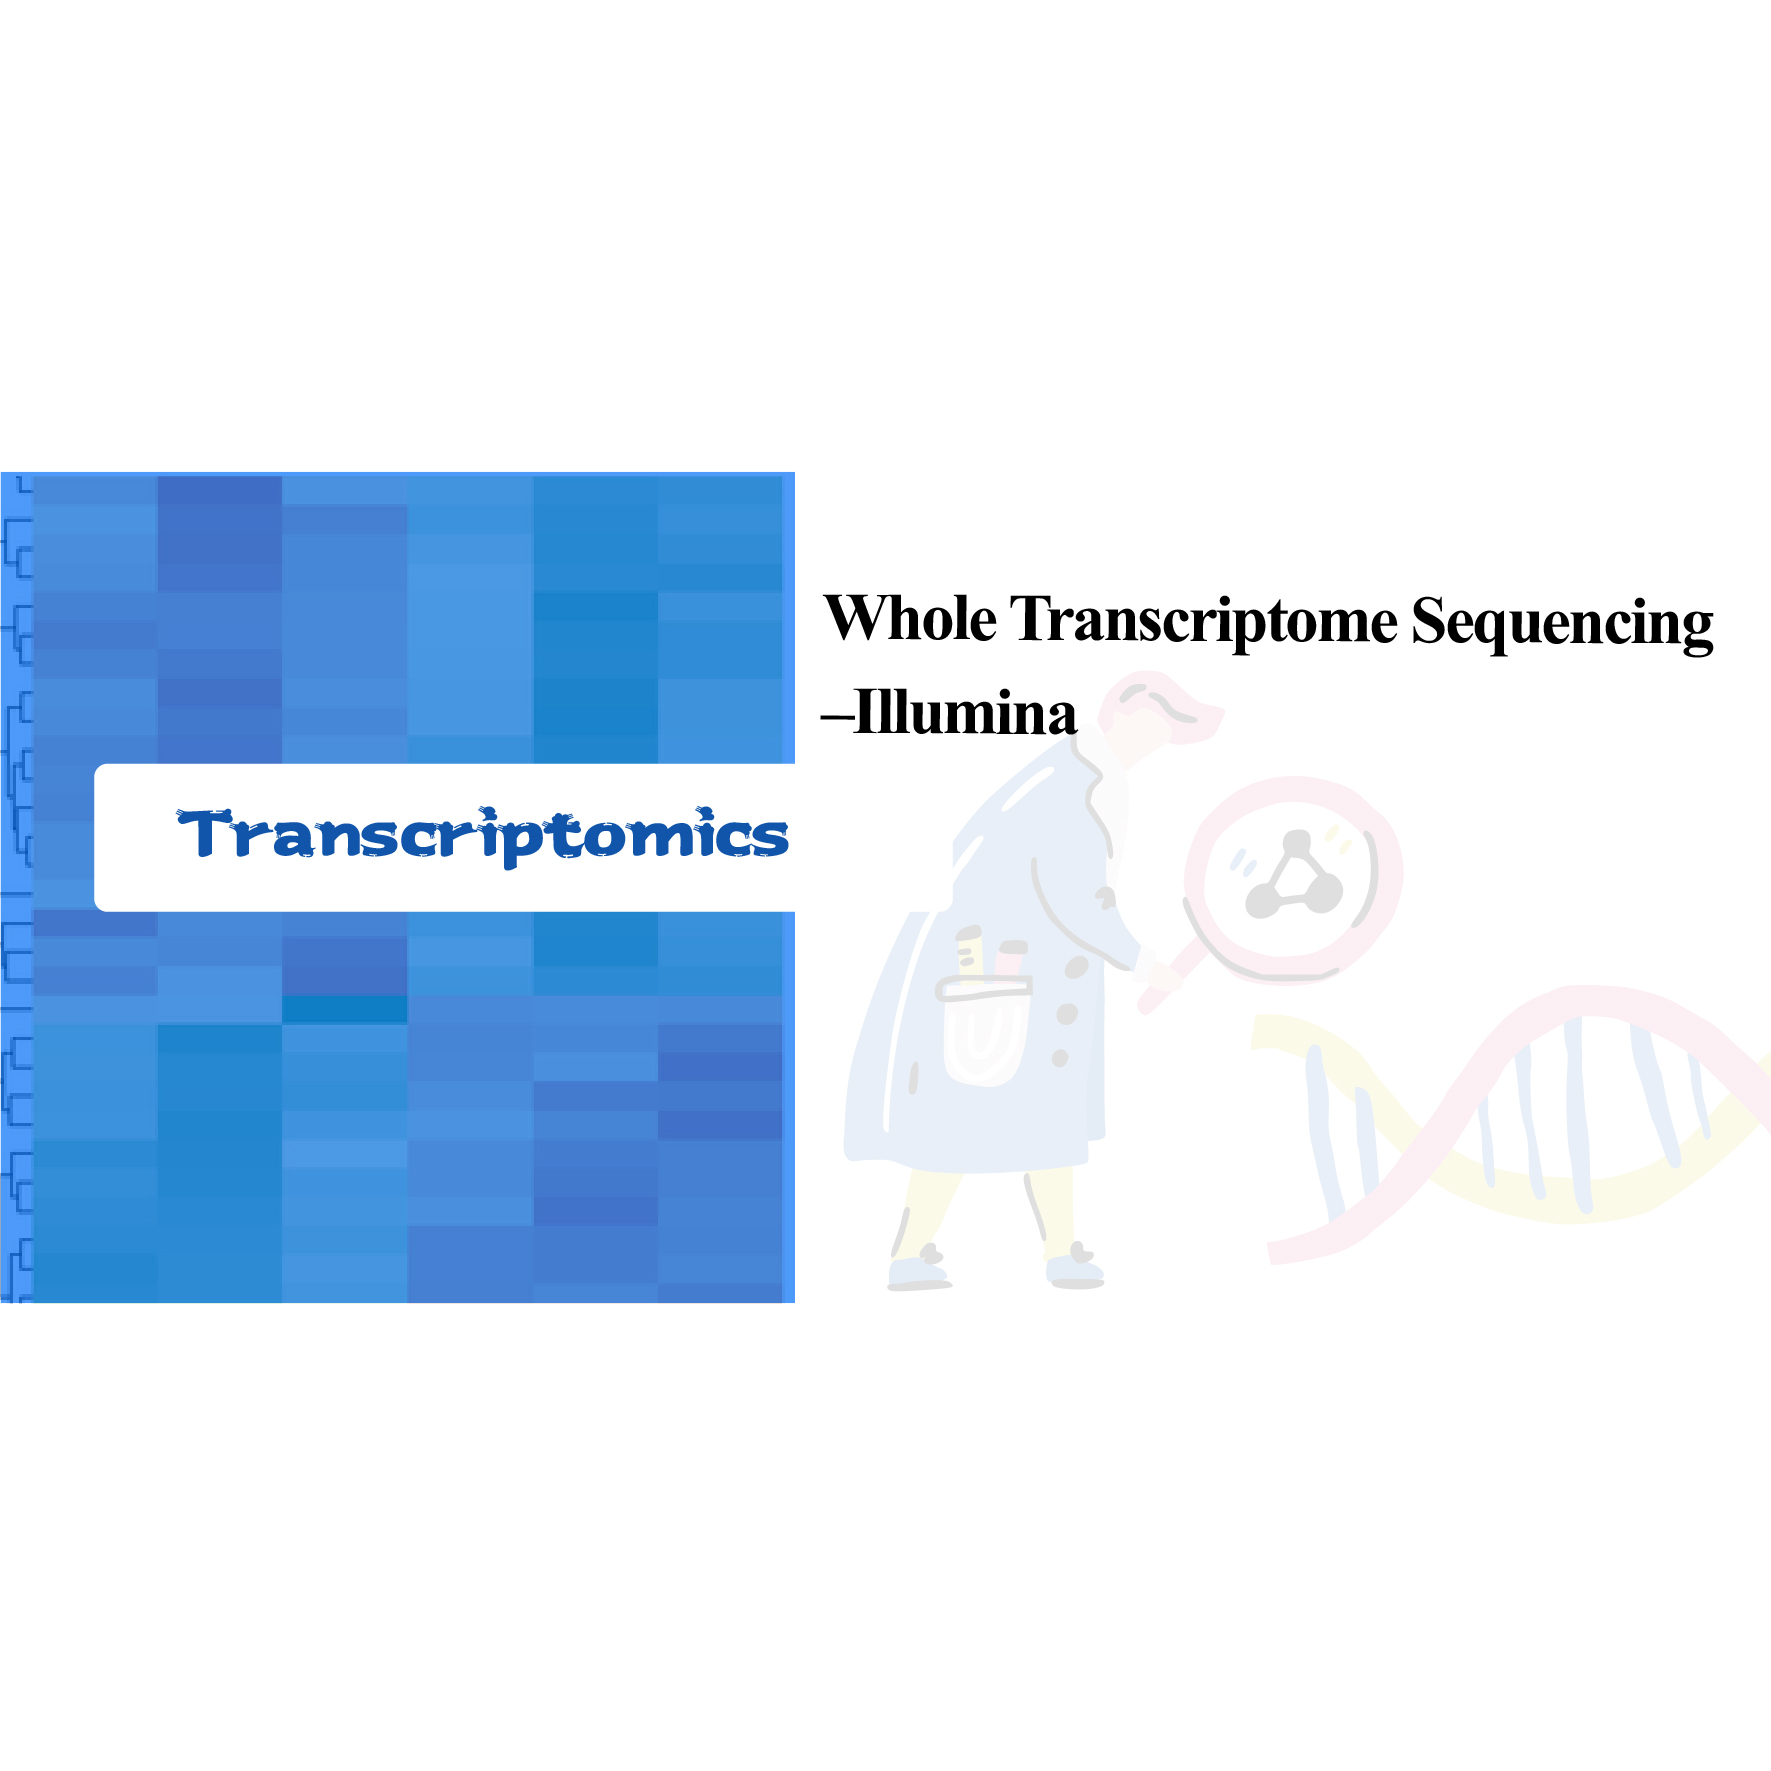 Whole transcriptome sequencing – Illumina